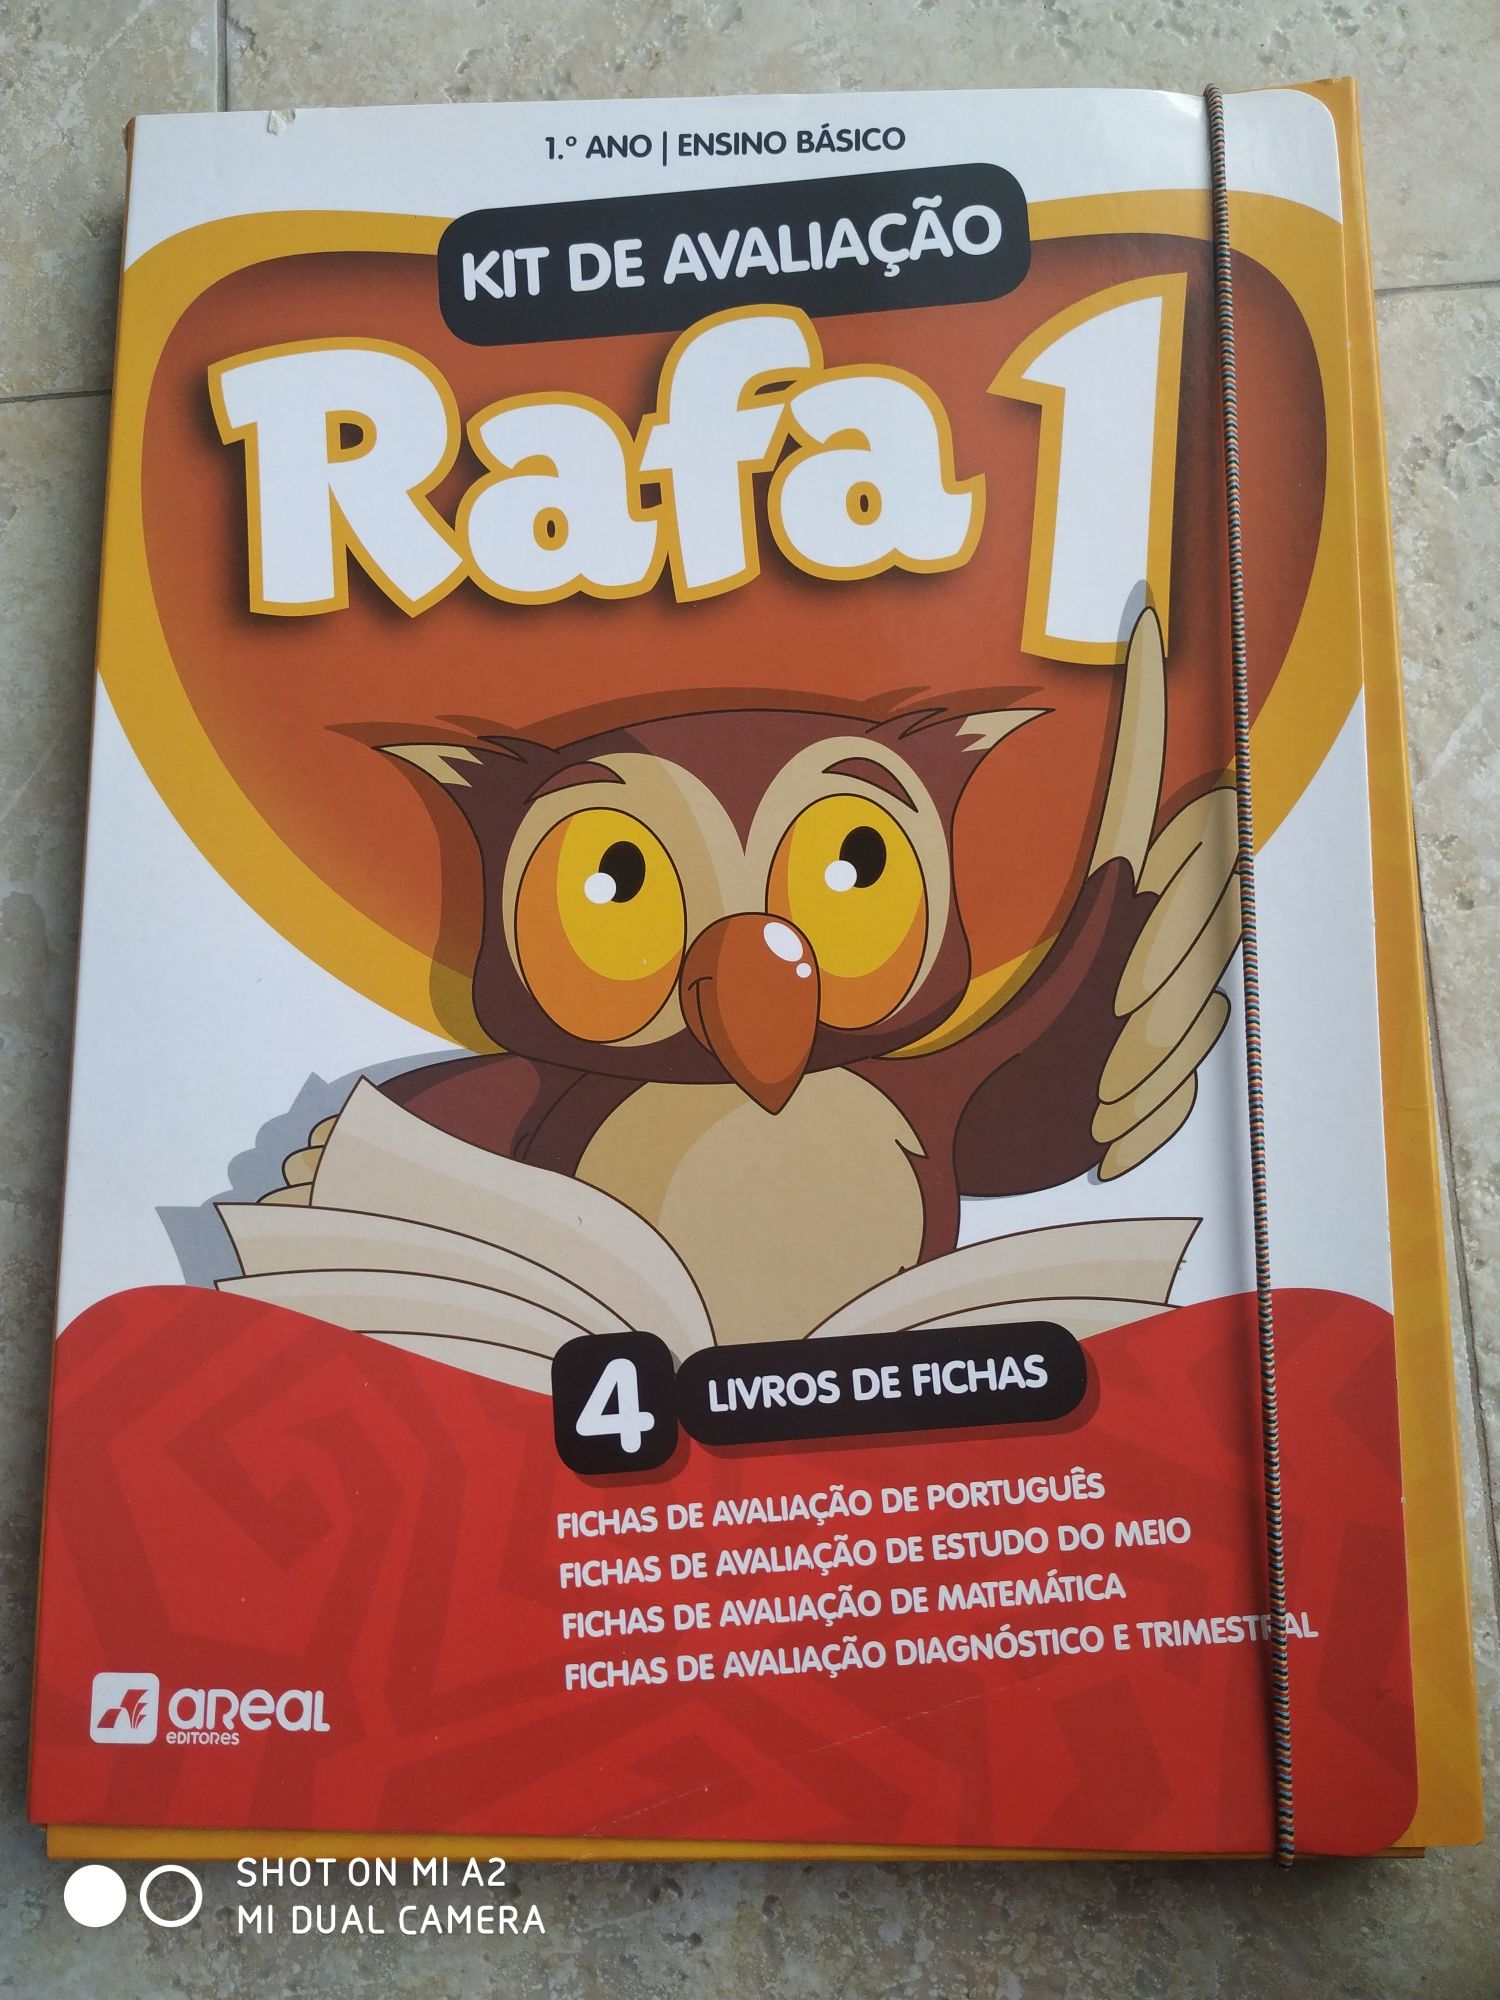 Livro "Kit de avaliação Rafa"